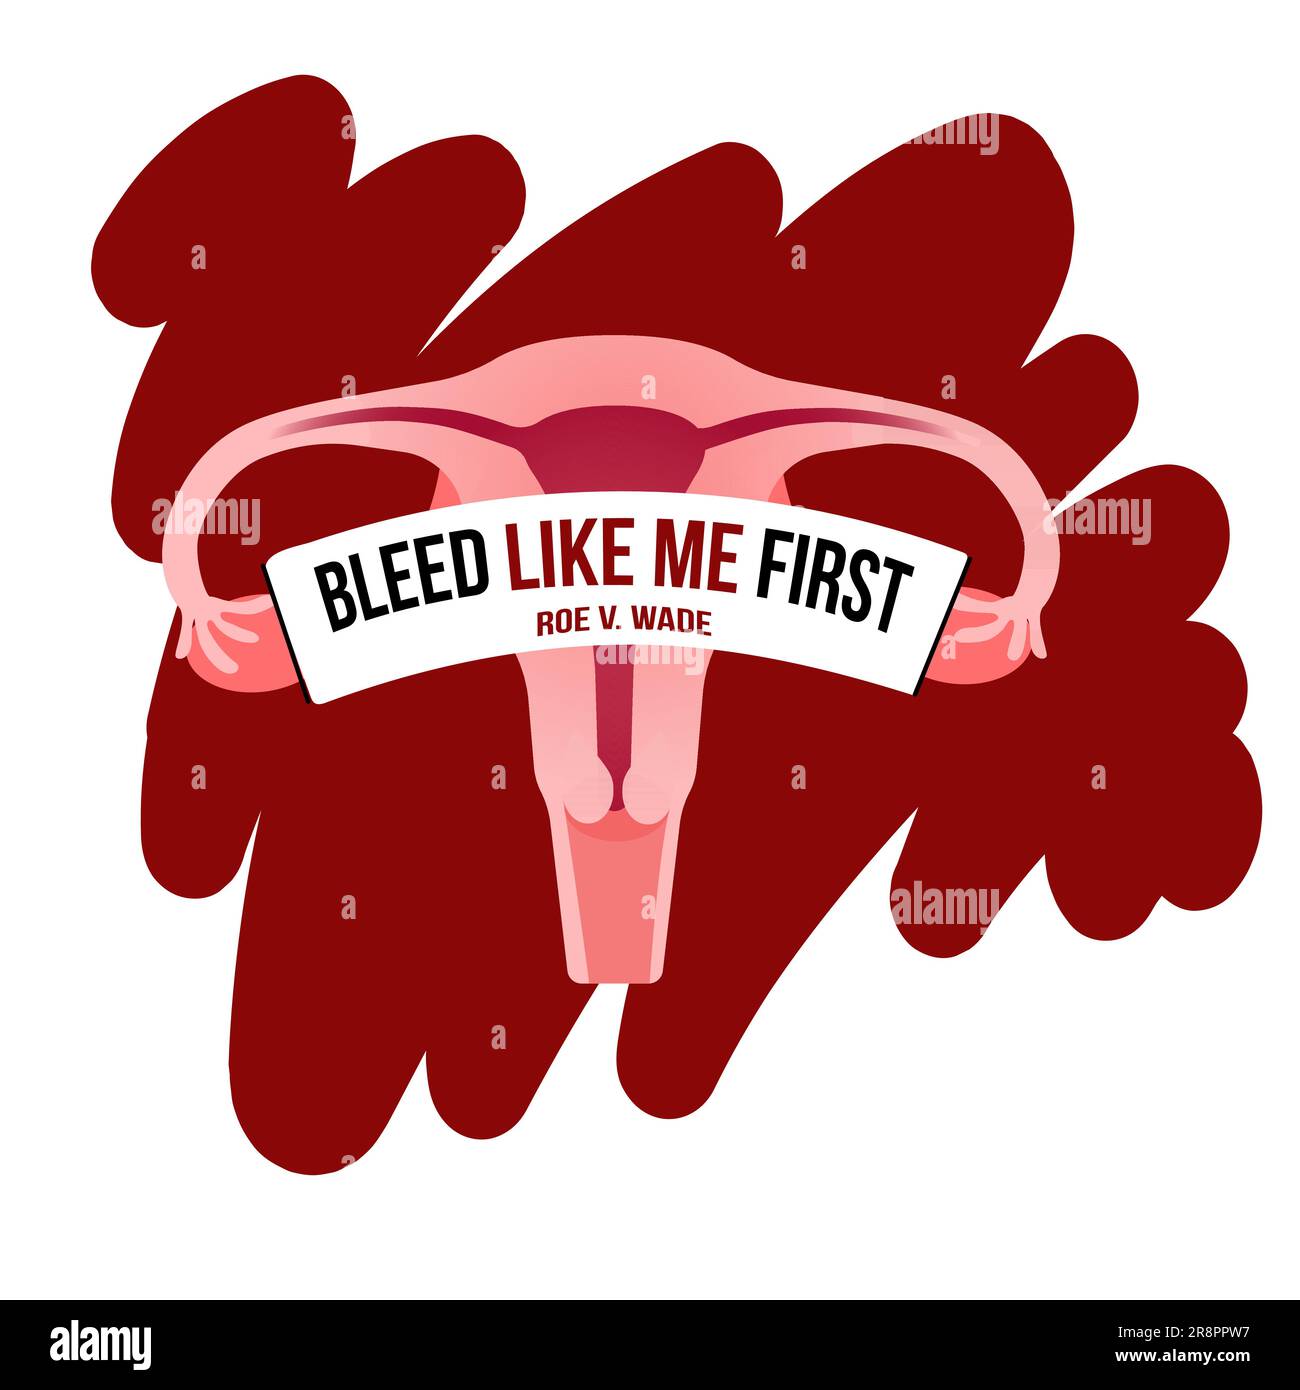 Frauenrechte Illustration. Uterus-Plakat mit Schriftzug. Zuerst blutete ich wie ich. Frauen, die nach dem Verbot R weiterhin Zugang zu Abtreibung verlangen Stock Vektor